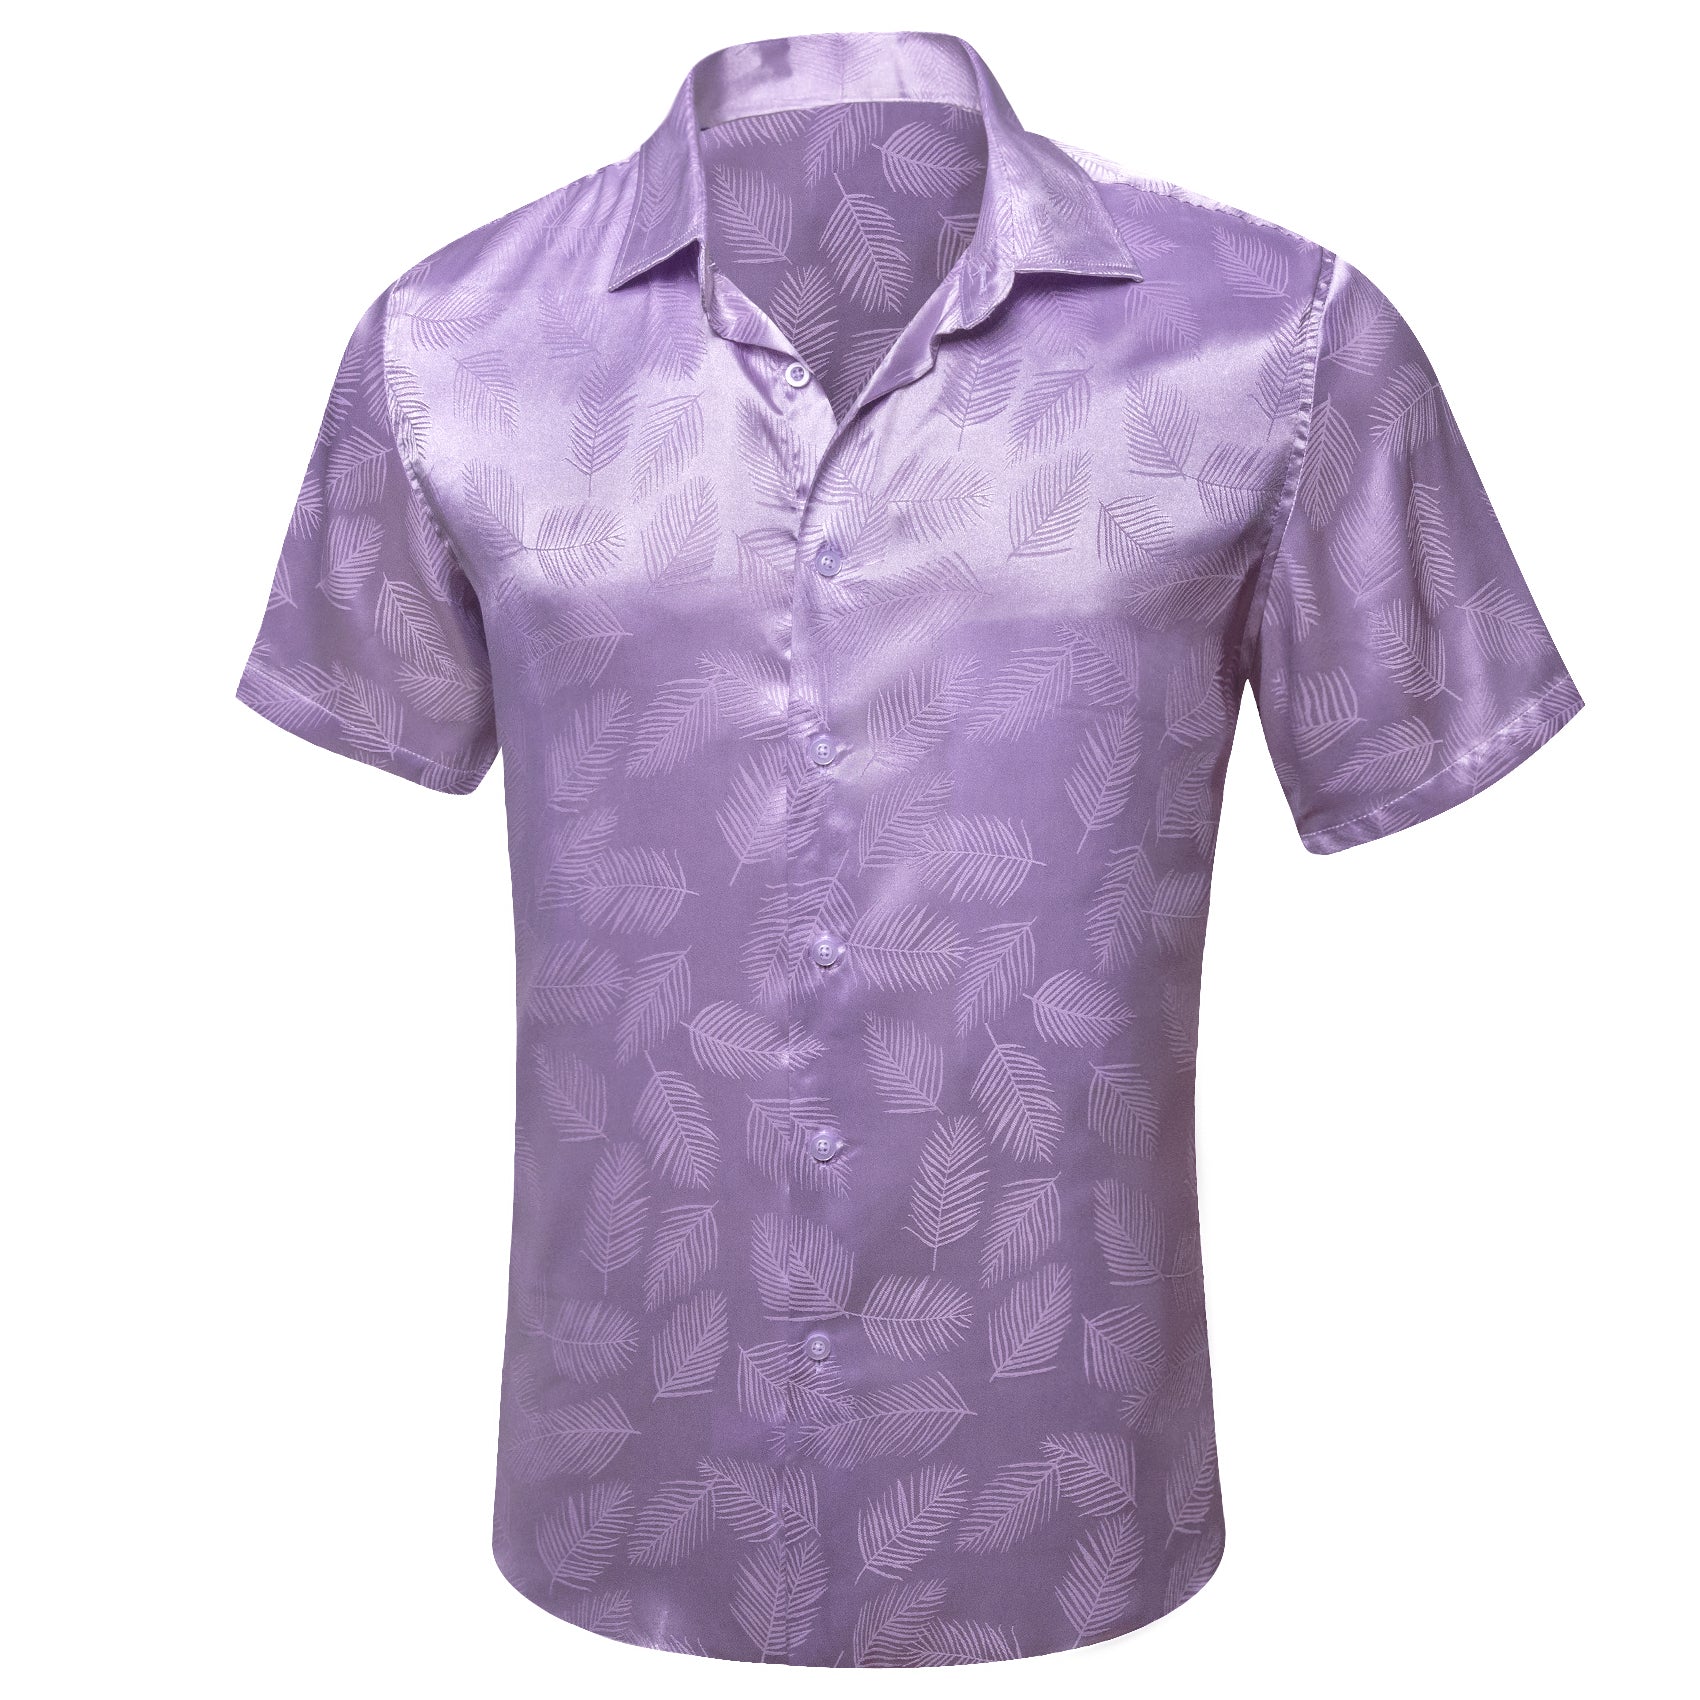 Light purple button down short sleeve shirt  for men 